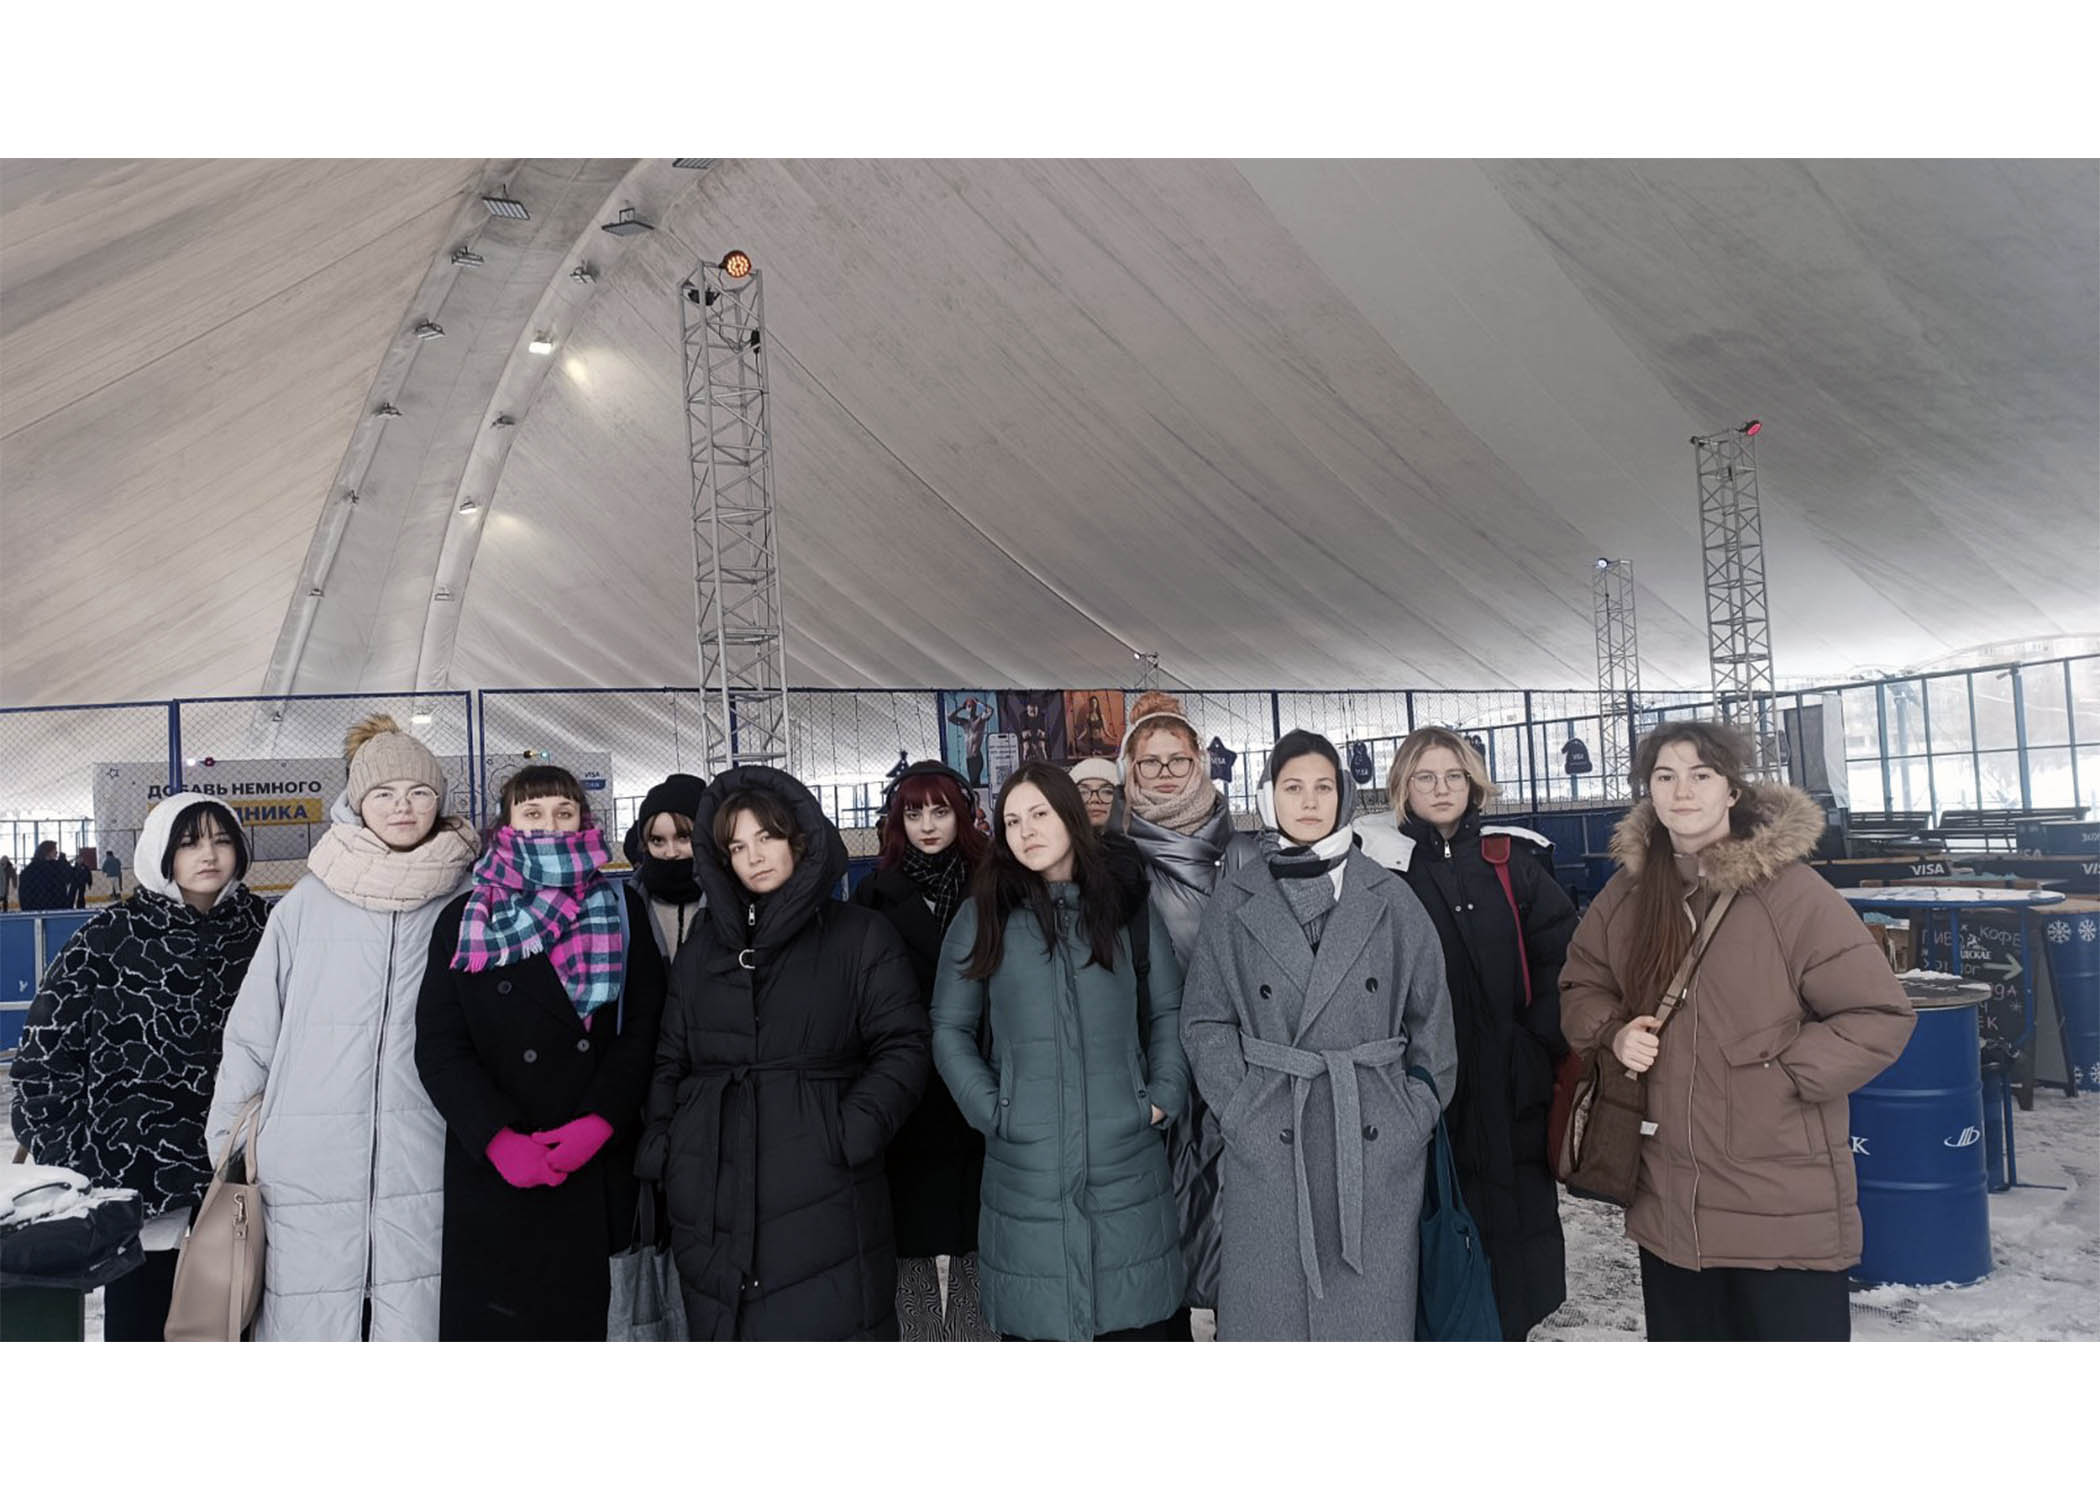 13 января, в последний день зимних каникул, учащиеся группы 29 активно отдыхают на катке возле Дворца спорта.